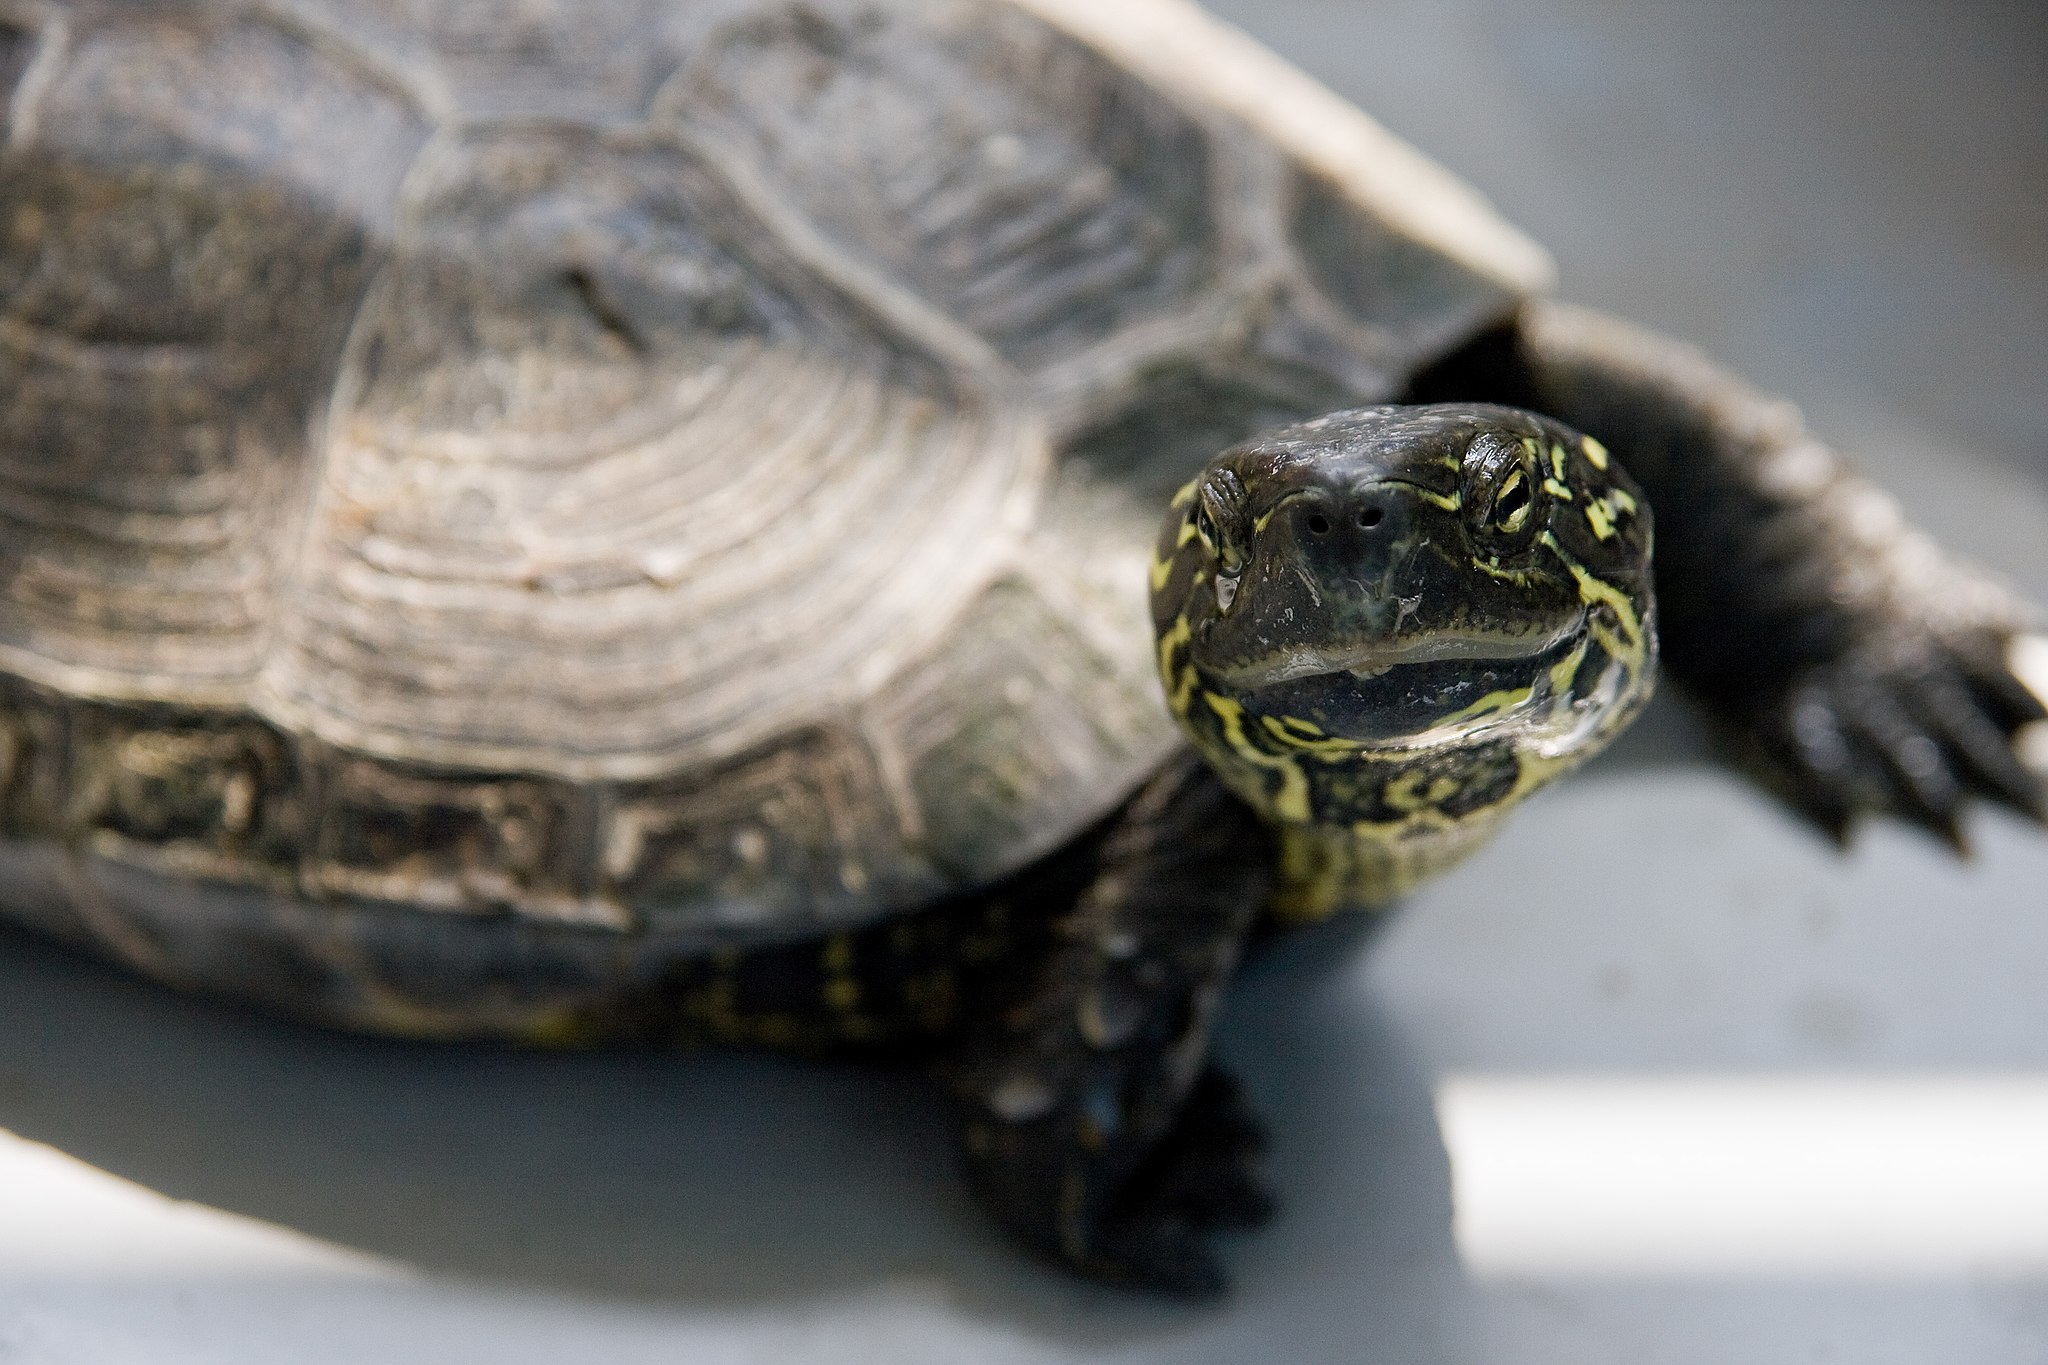 Kínai etológusok: A teknősembriók „döntenek”, hogy nősténnyé vagy hímmé fejlődjenek